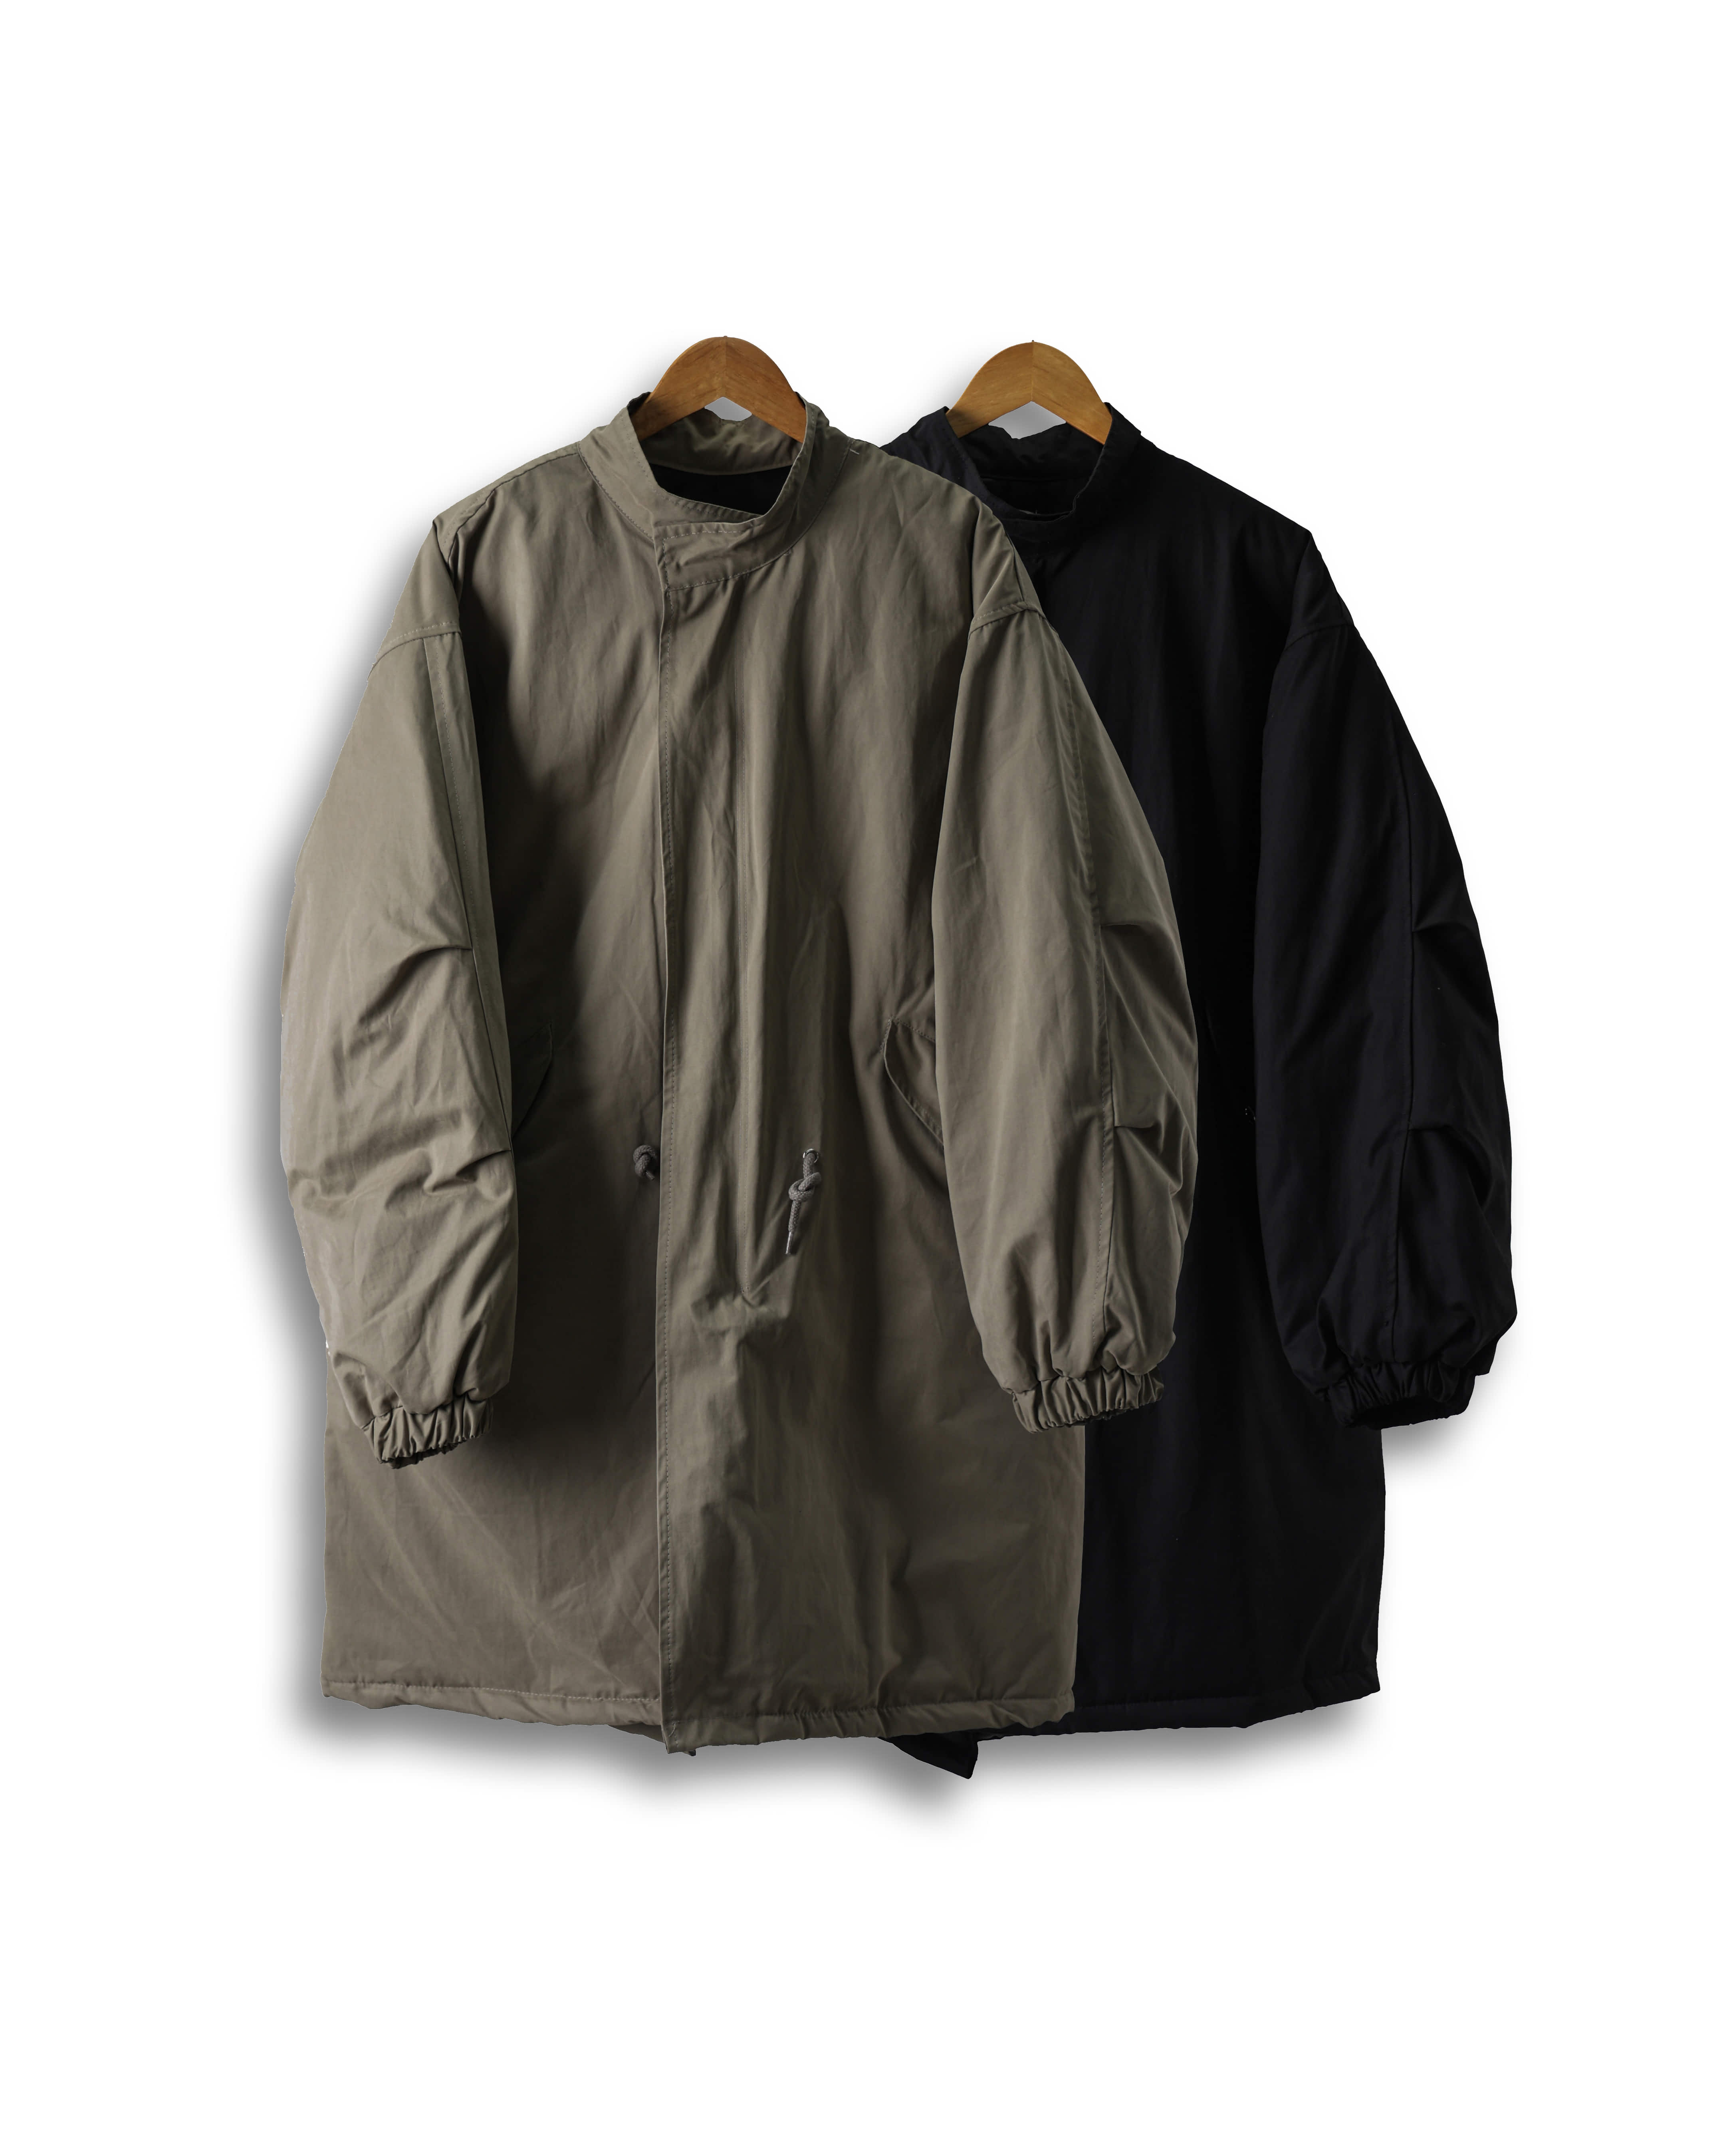 Dene Fishtail Military Padding Jacket (Black/Beige)